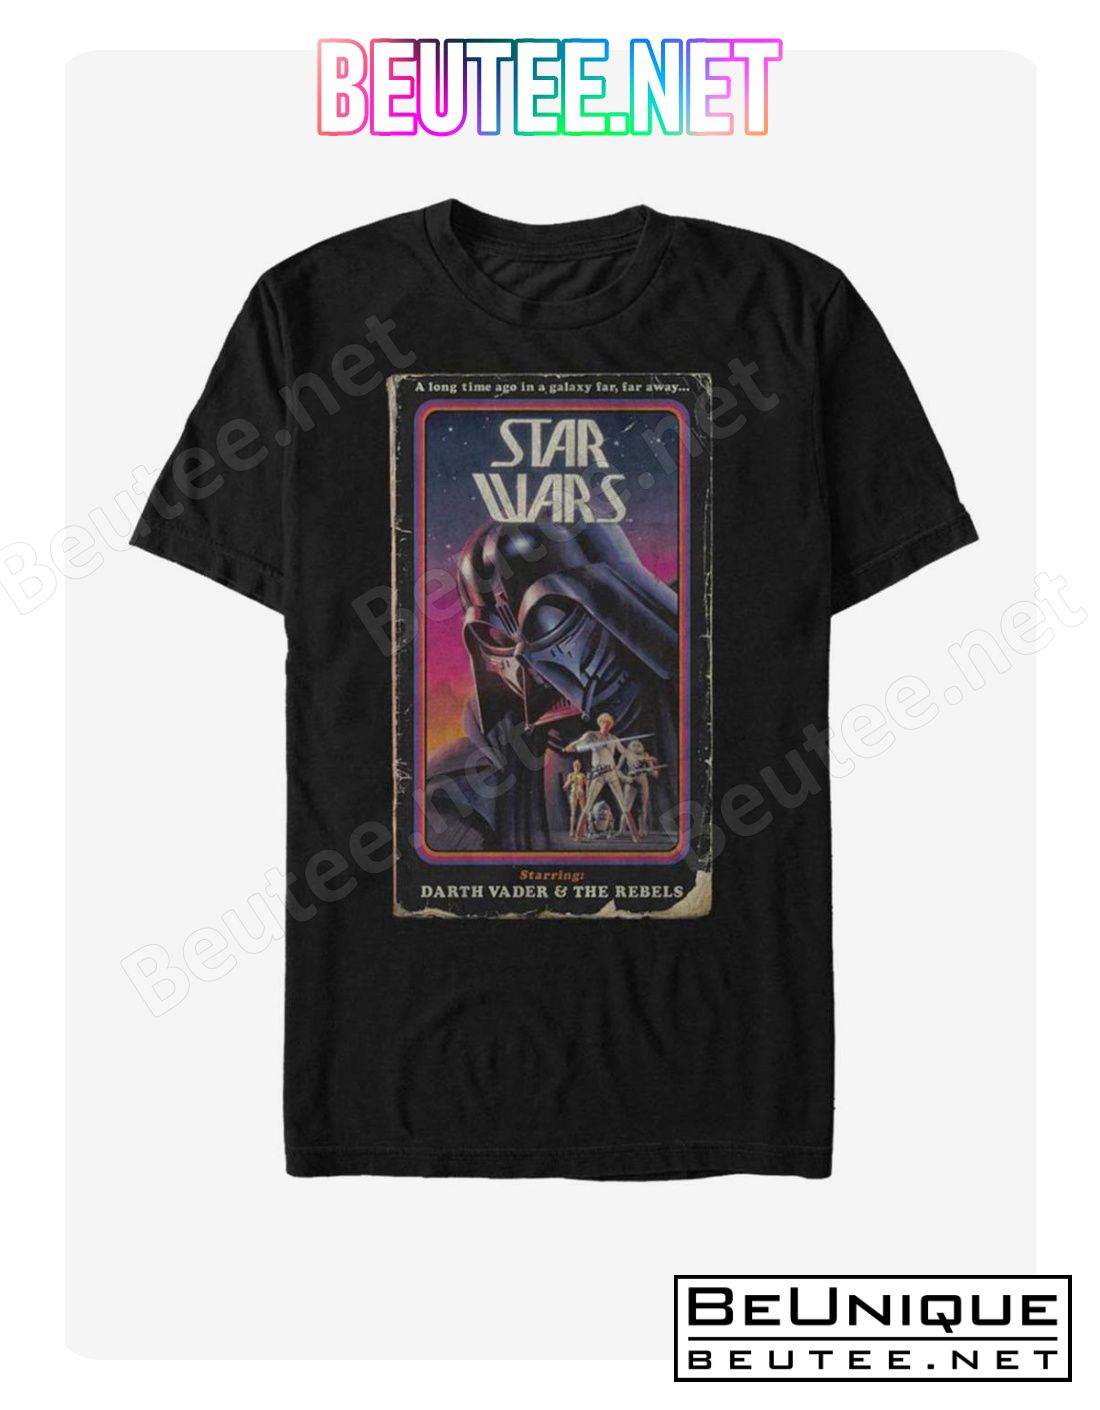 Star Wars Video Stars Poster T-Shirt